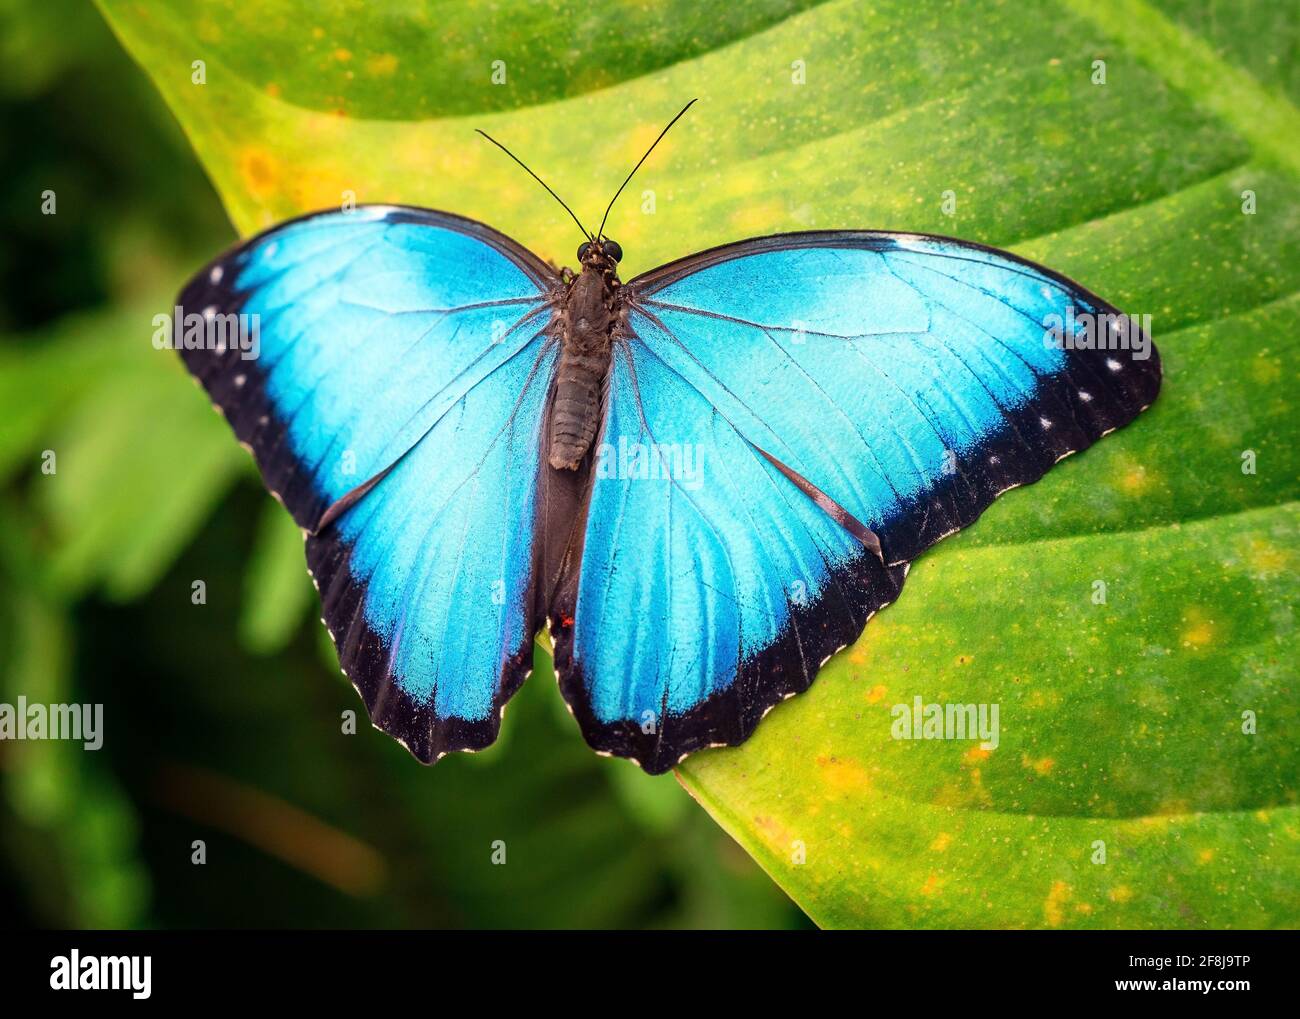 Bleu Morpho papillon (Morpho menelaus) gros plan, Mindo, Equateur. Banque D'Images